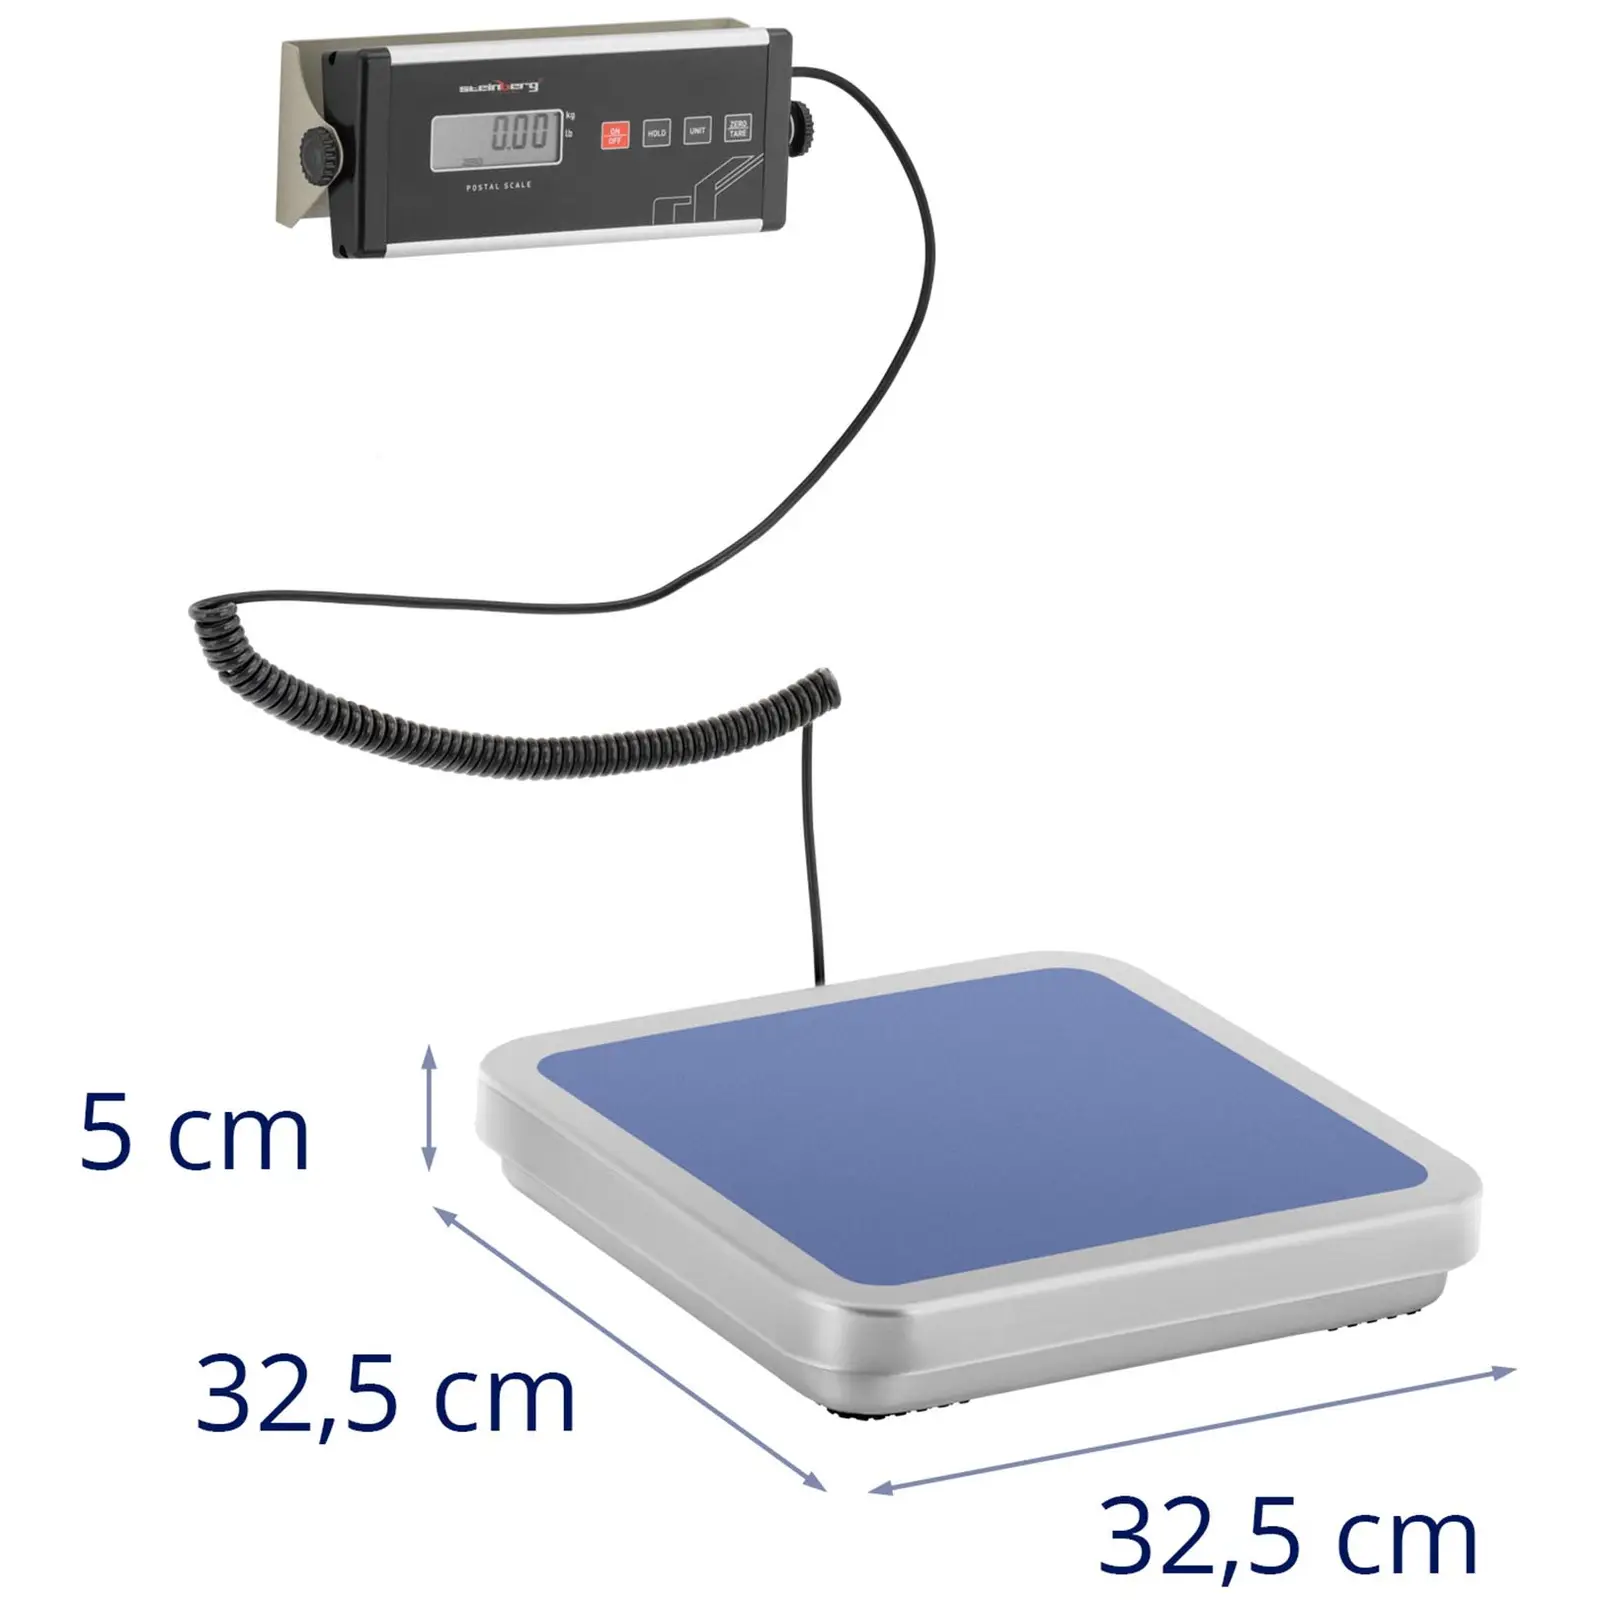 Balíková váha - 30 kg / 0,01 kg - 31,5 x 32,5 cm - externí LCD displej